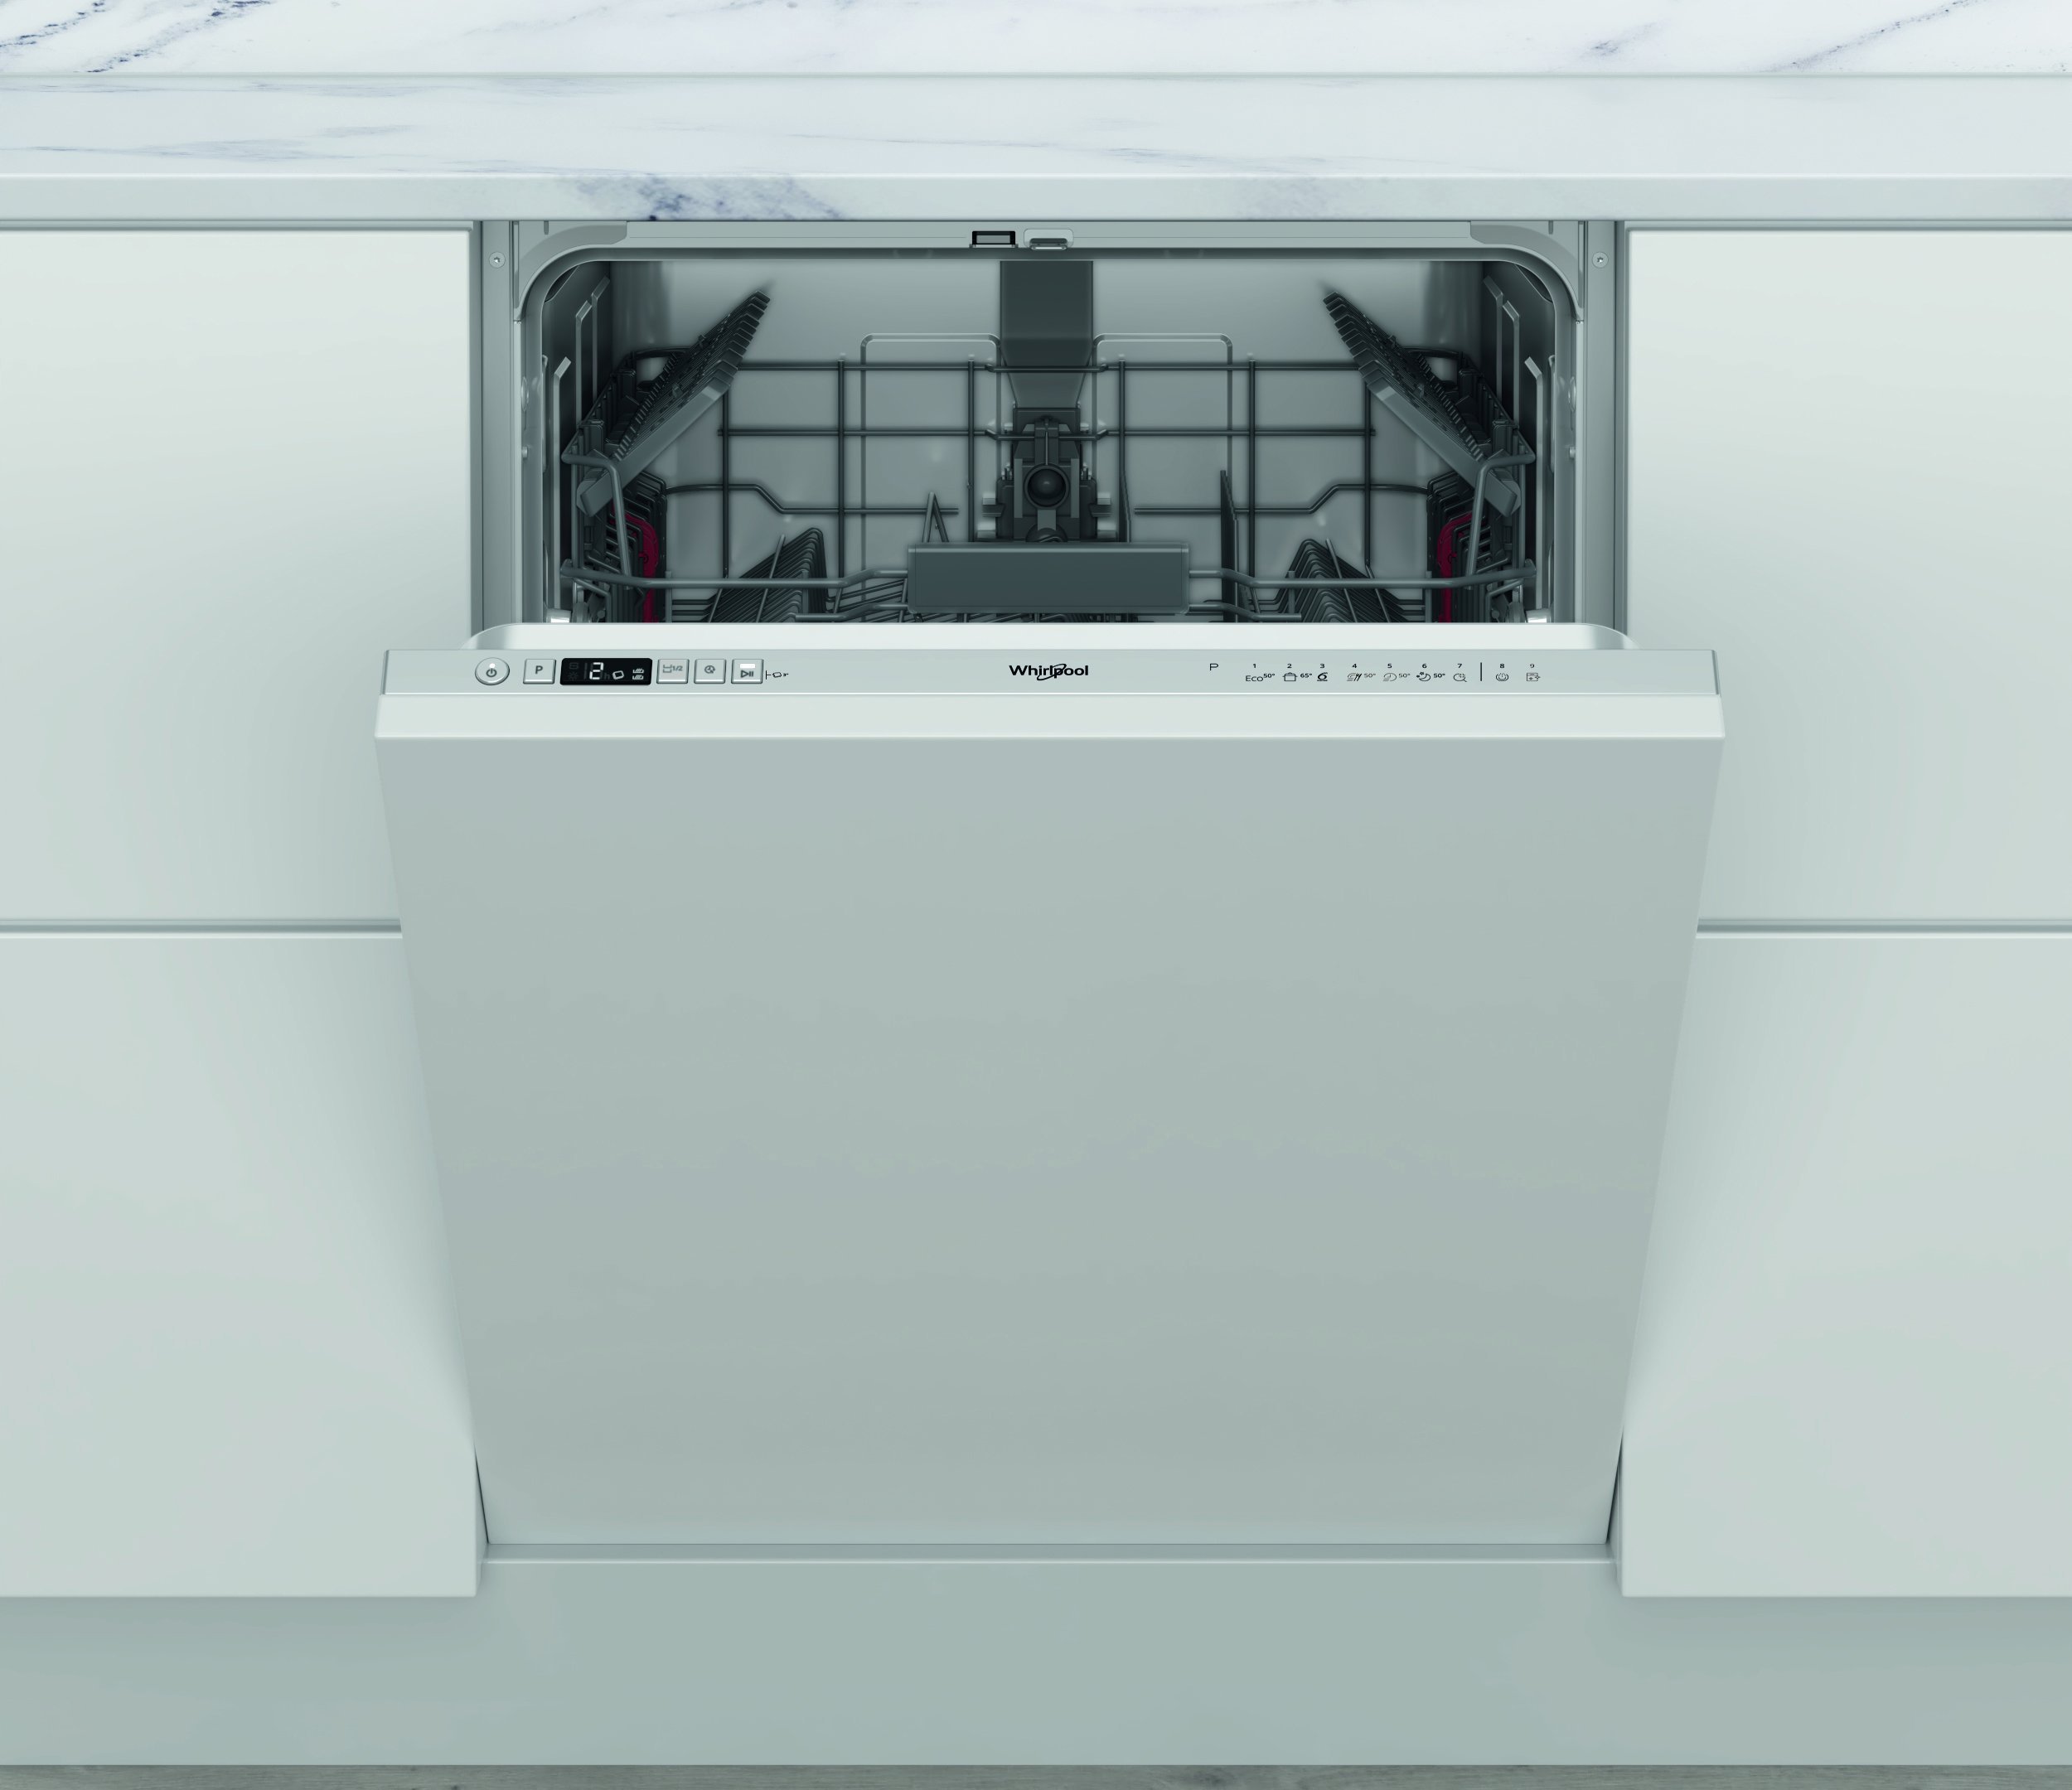 Masini de spalat vase incorporabile - Mașină de spălat vase incorporabila  Whirlpool W2IHD524AS, 14 seturi,44 dB,59,8 cm